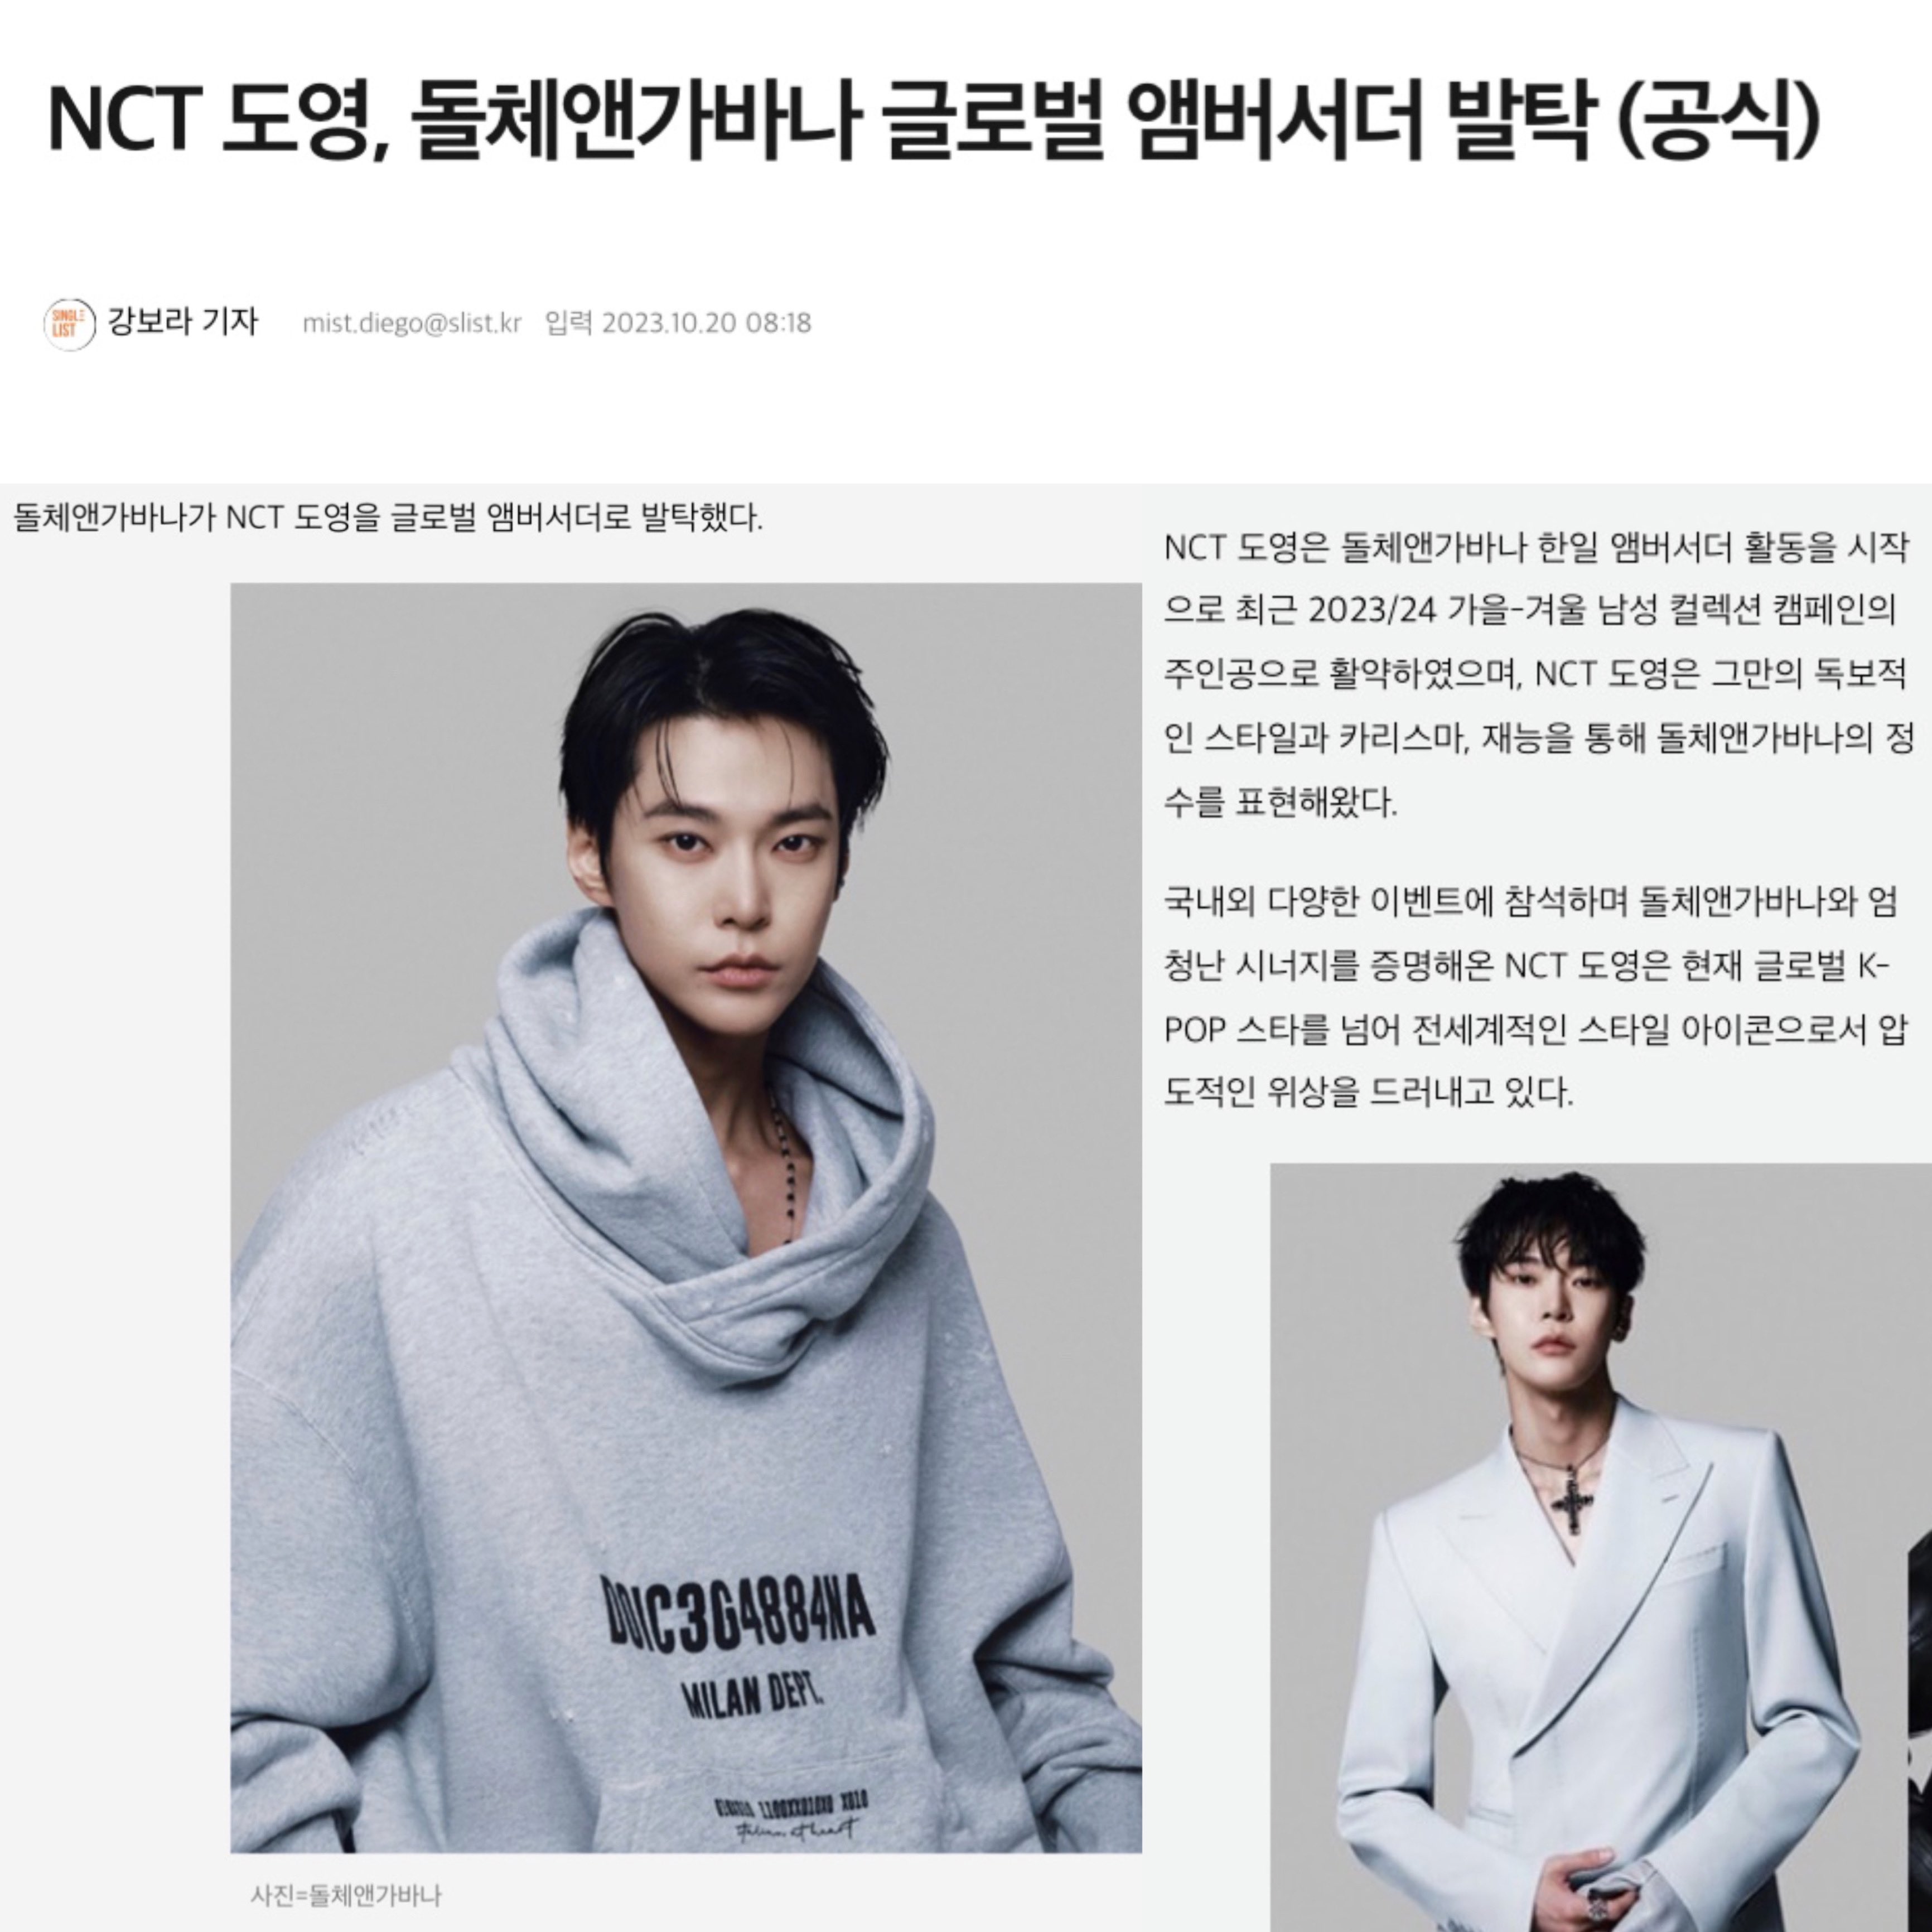 [정보/소식] NCT 도영, 돌체앤가바나 글로벌 앰버서더 발탁 (공식) | 인스티즈